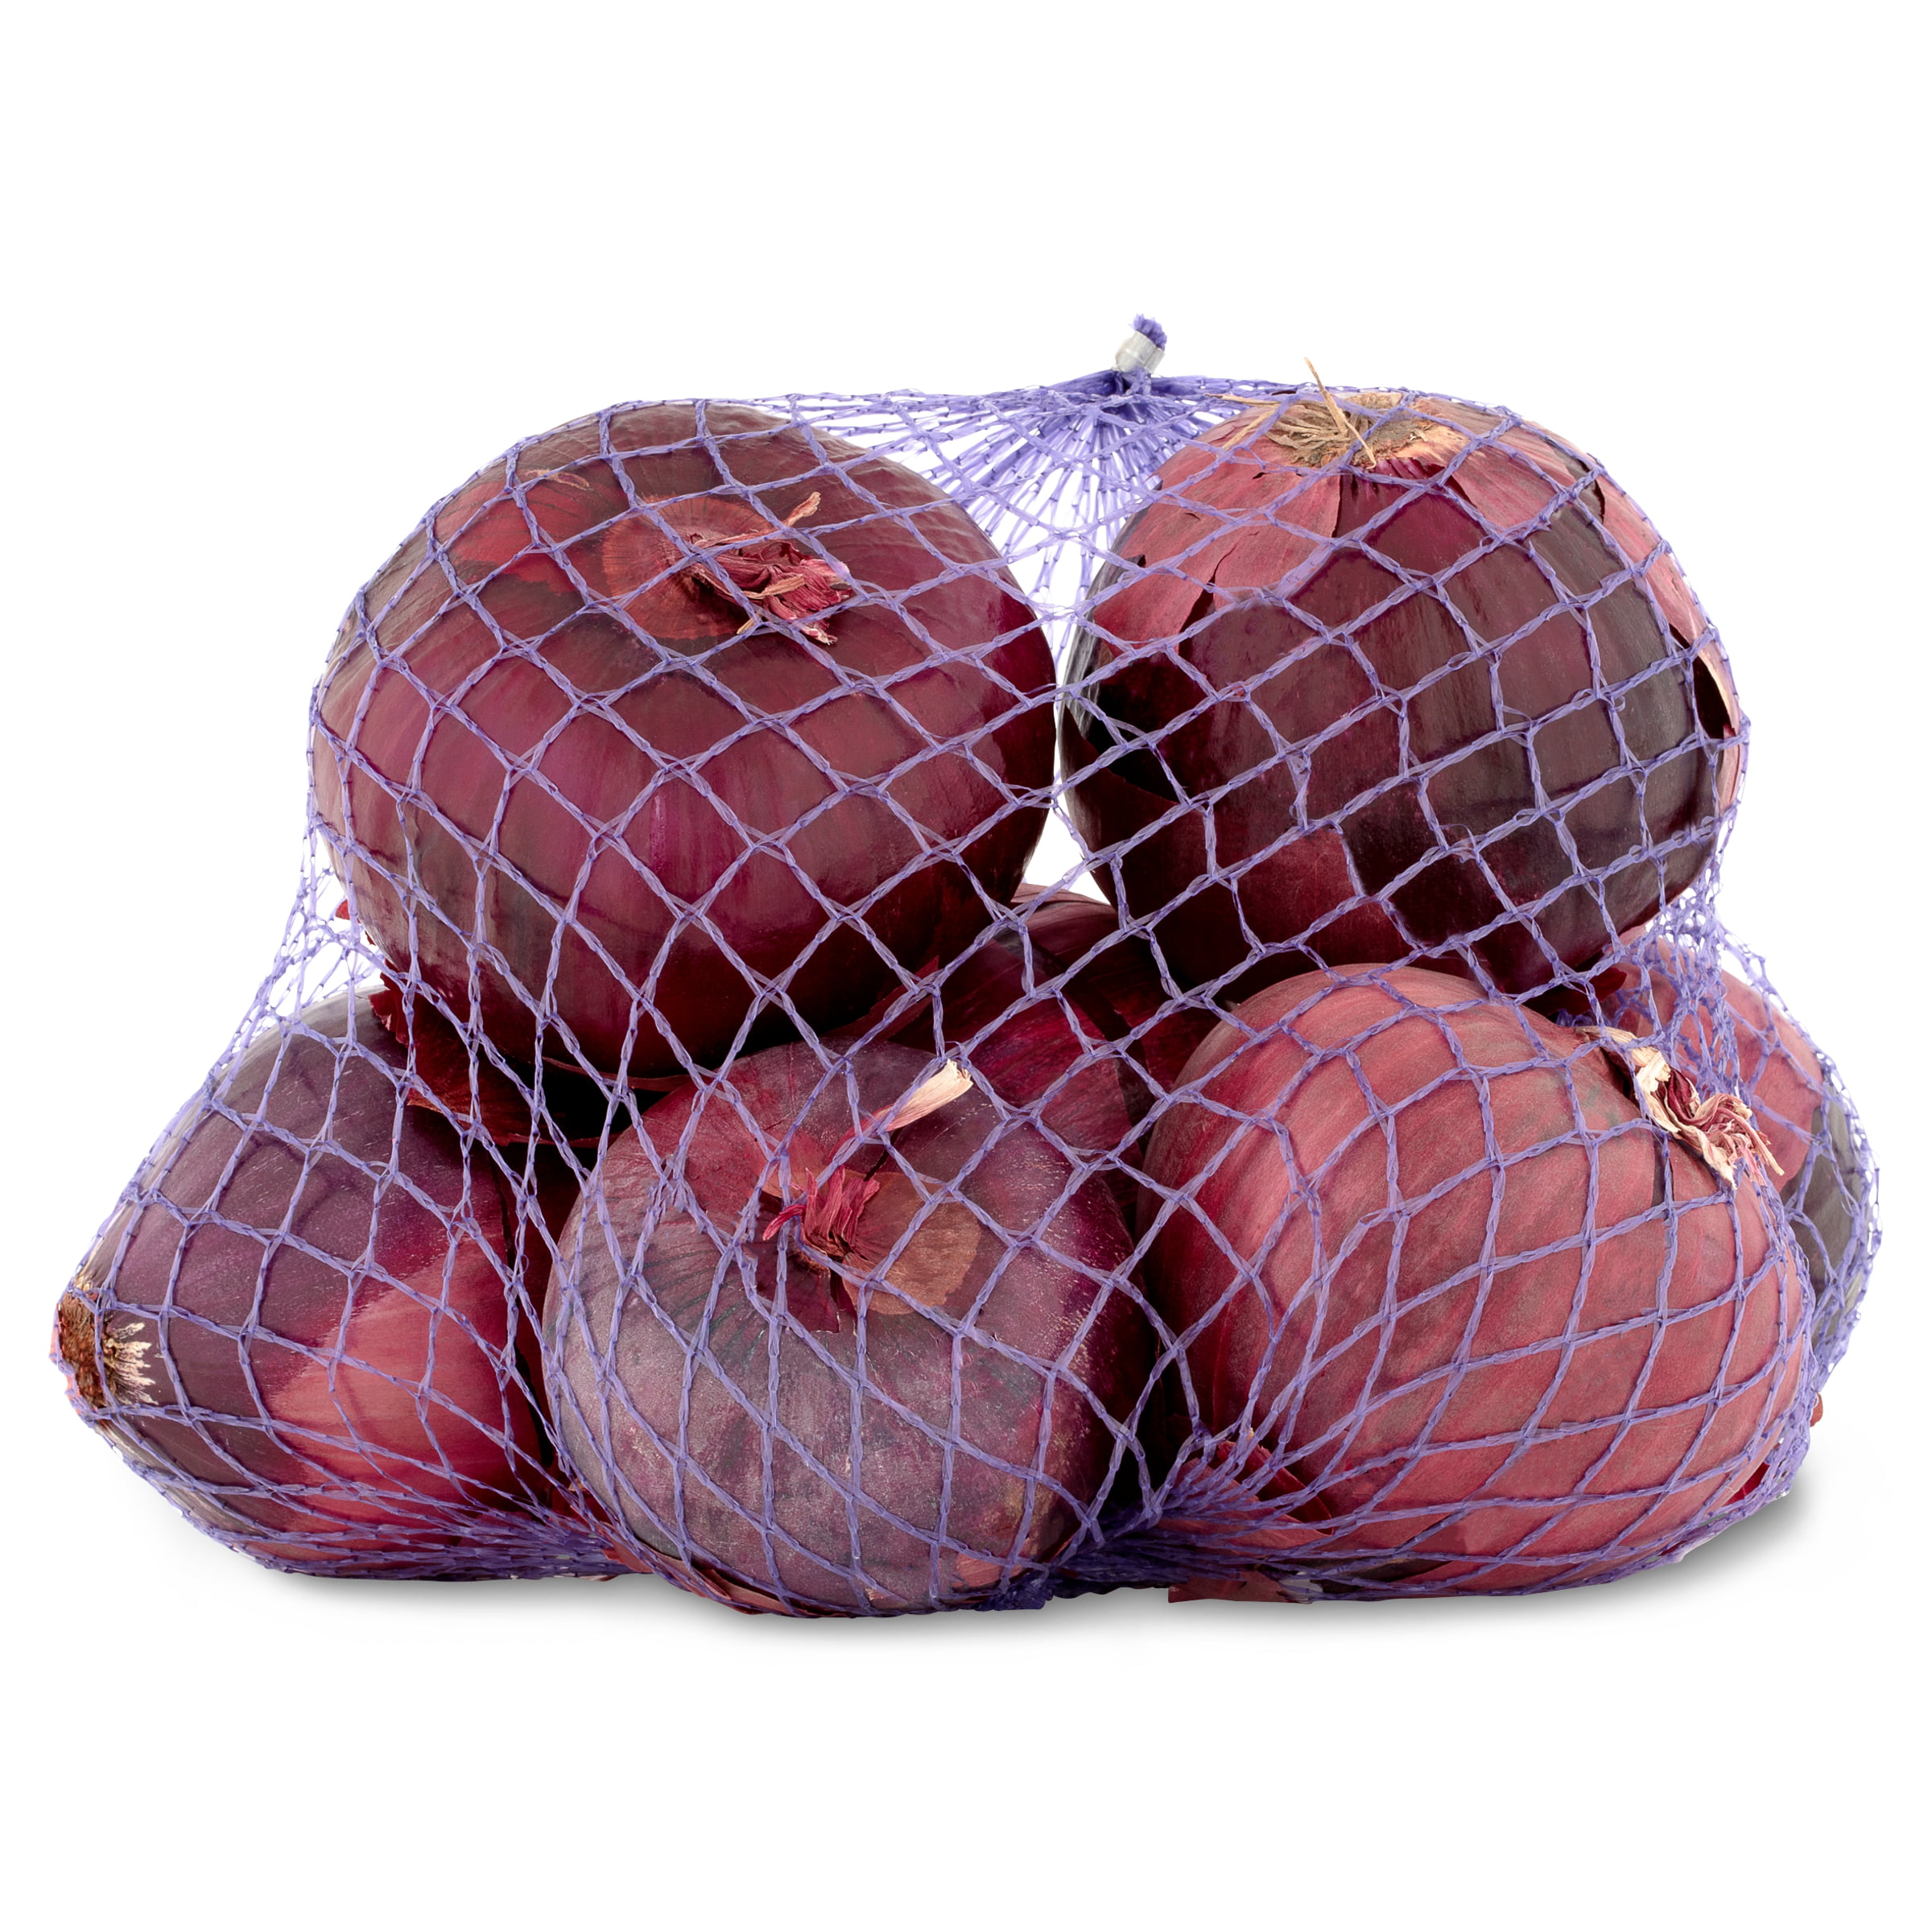 Fresh Red Onions, 3 lb Bag 